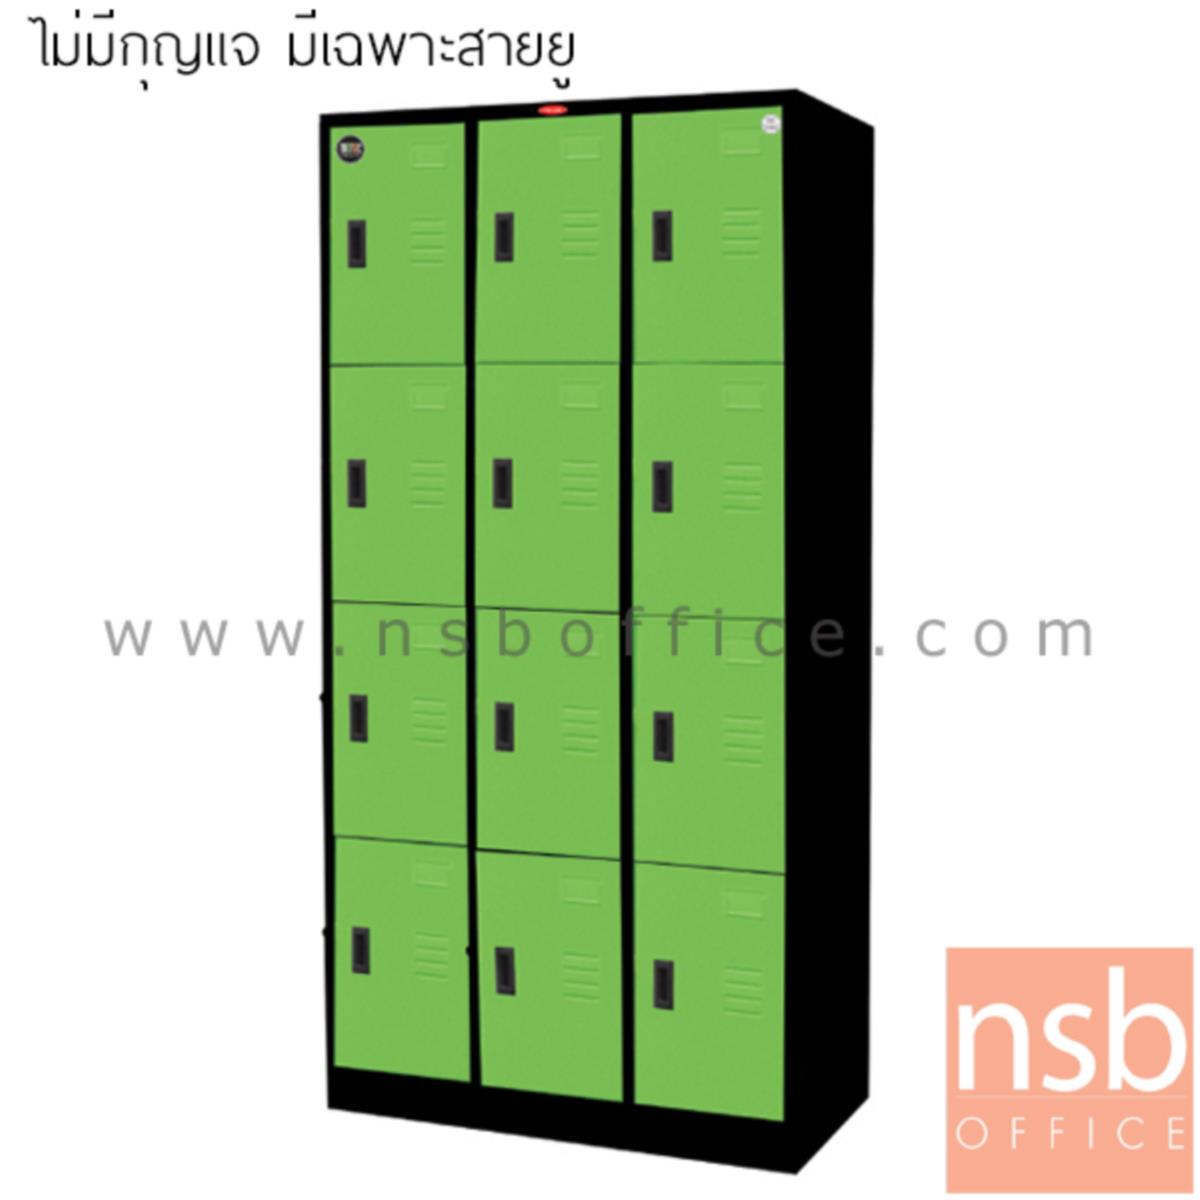 ตู้ล็อคเกอร์ 12 ประตู  รุ่น PPK-012  หน้าบานสีสันโครงตู้สีดำ (ไม่มีกุญแจ มีเฉพาะสายยู) 